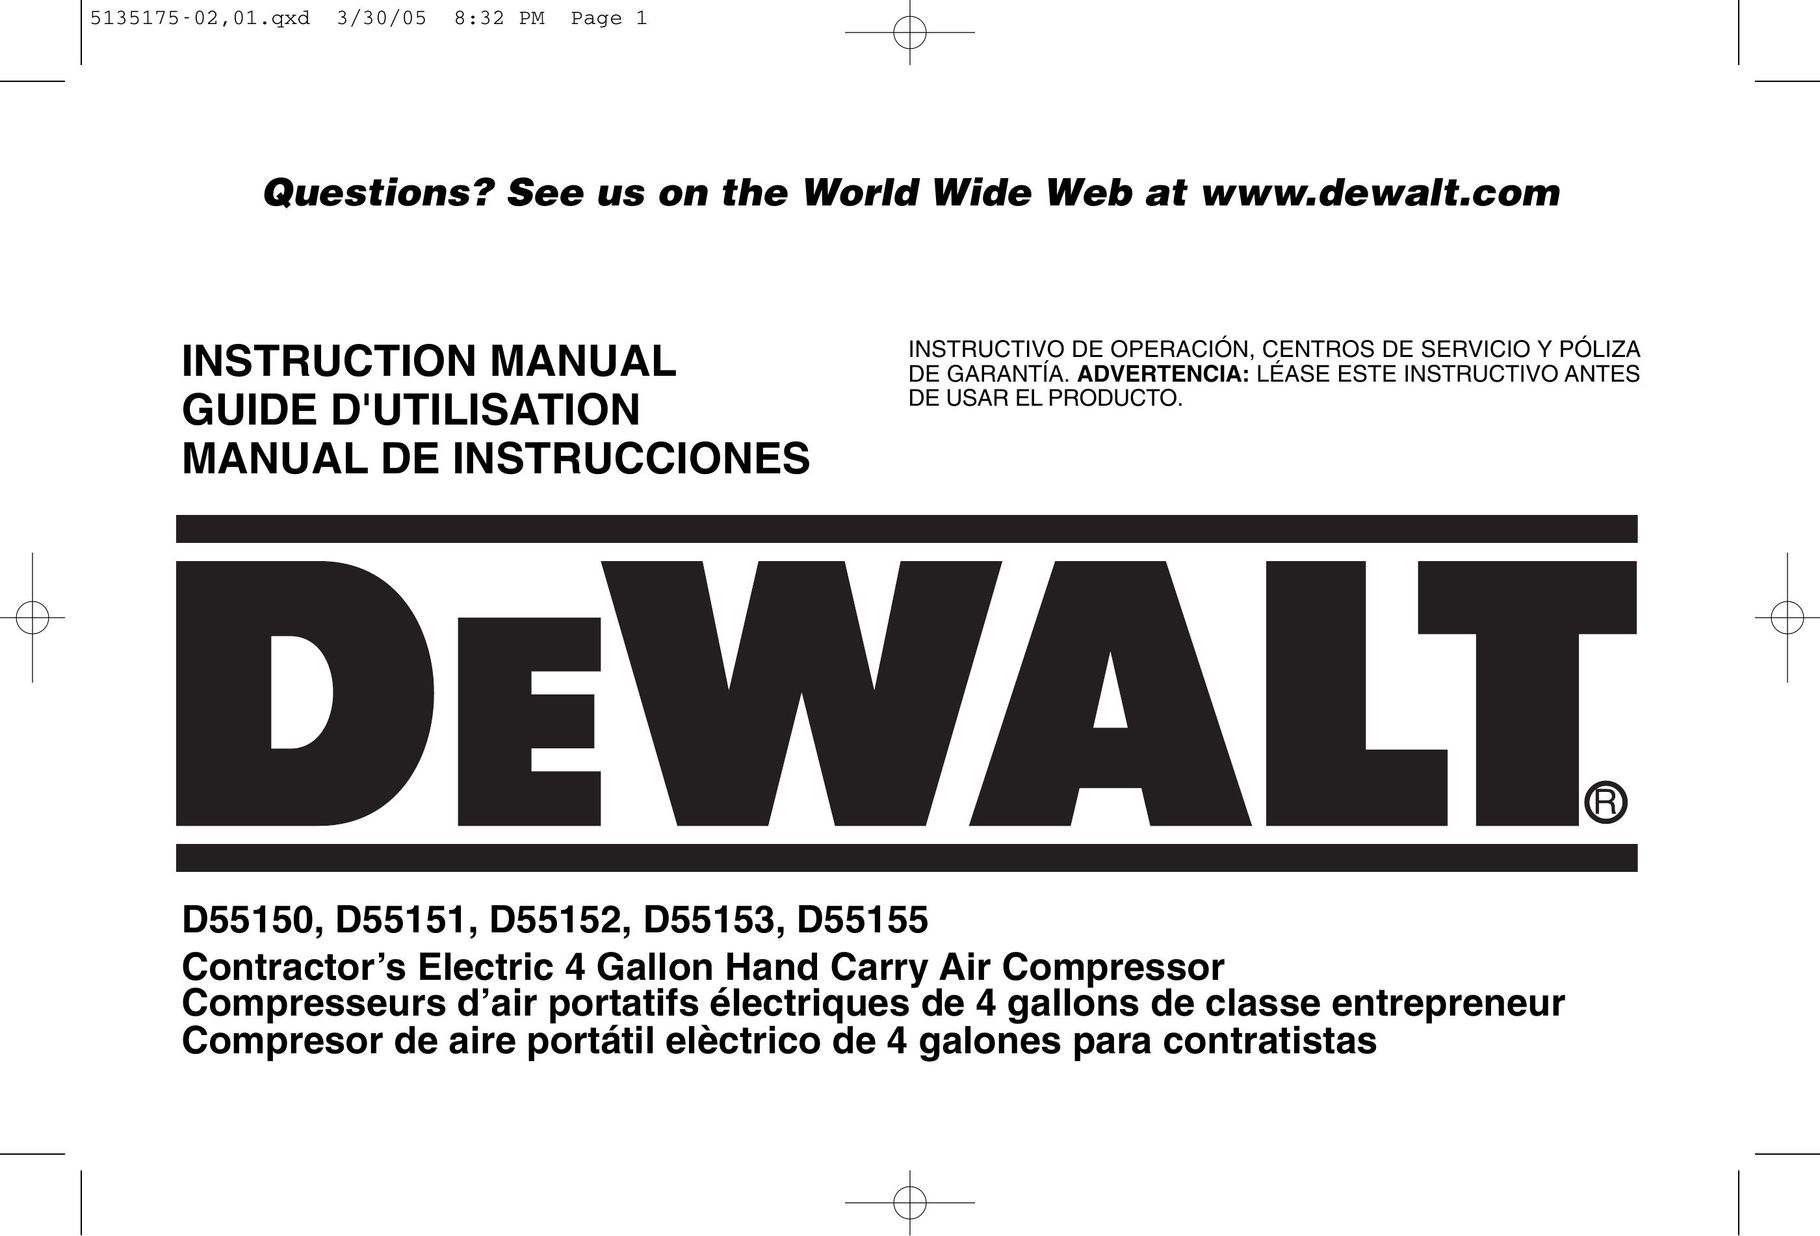 DeWalt D55153R Air Compressor User Manual